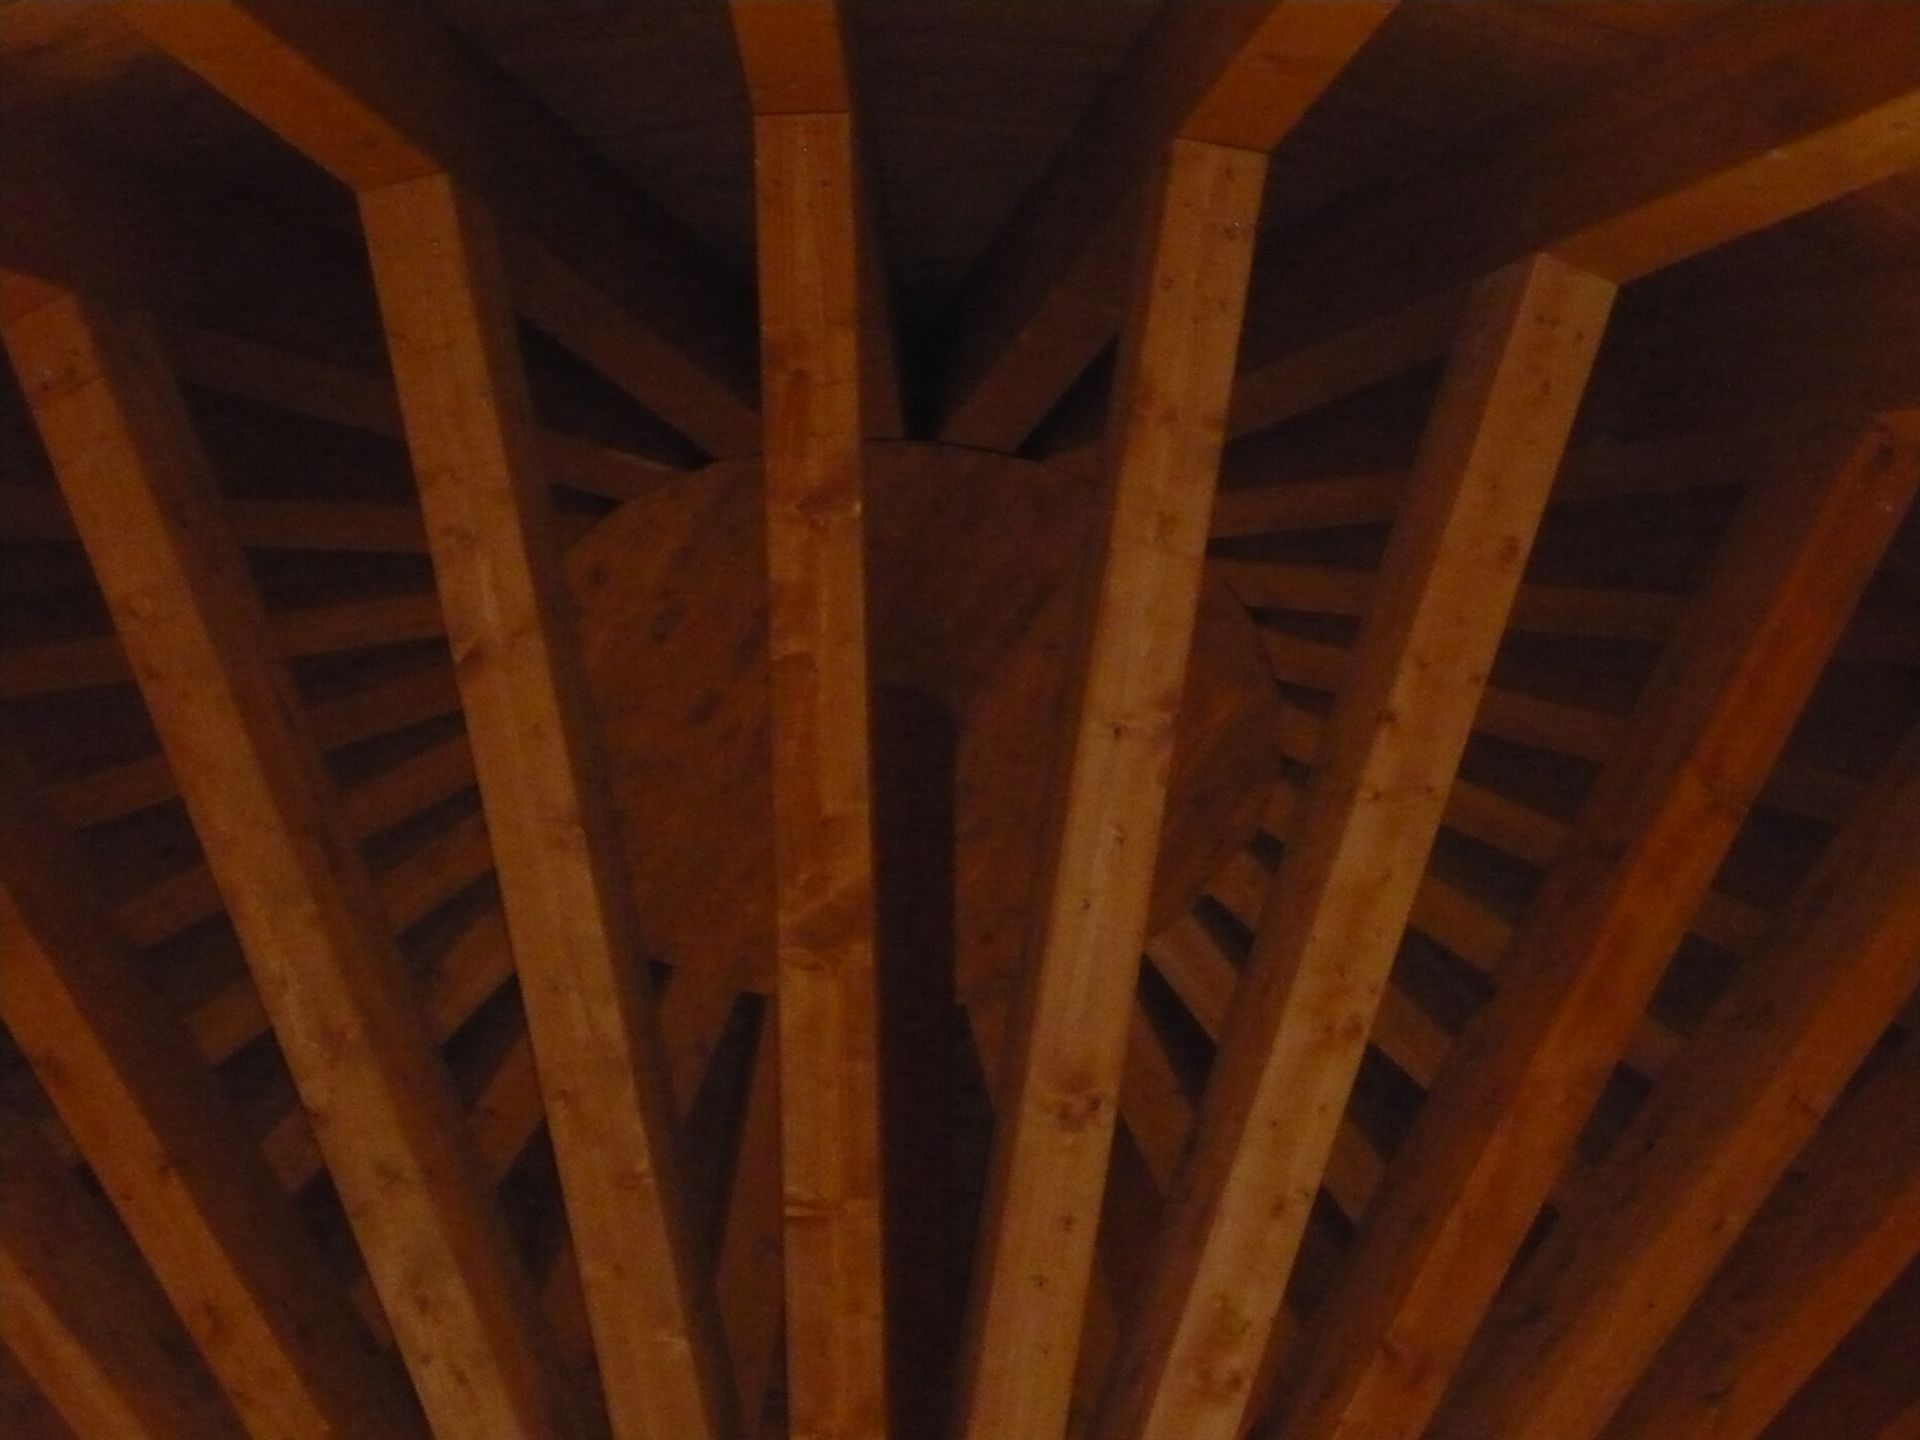 Baite e Chalet in legno Bergamasca Costruzioni Legno Casette Residence Turistico